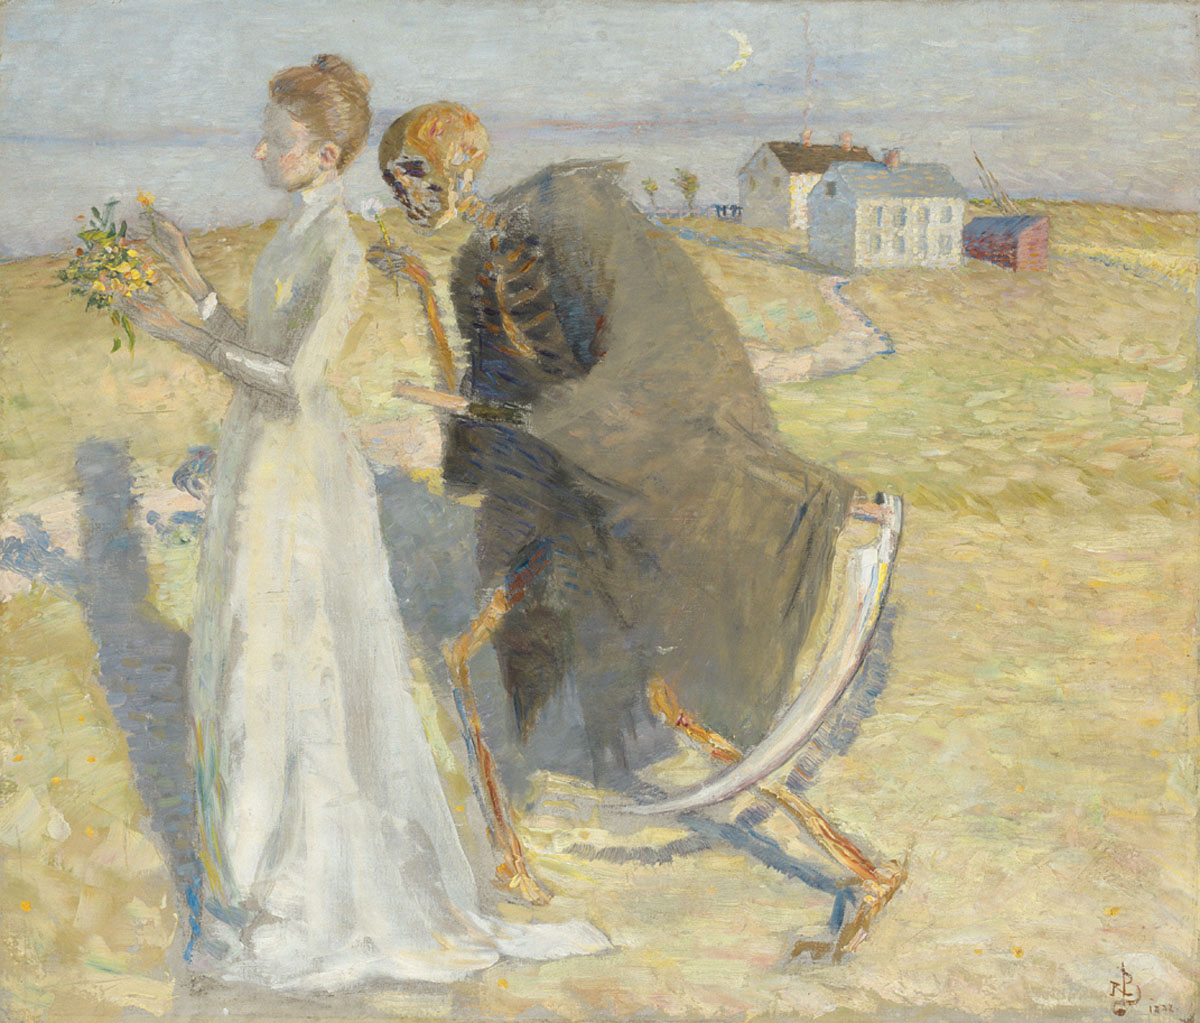 Richard Bergh, Flickan och döden, 1888. Olja på duk, 71,5 x 83,5. Foto: Prins Eugens Waldemarsudde